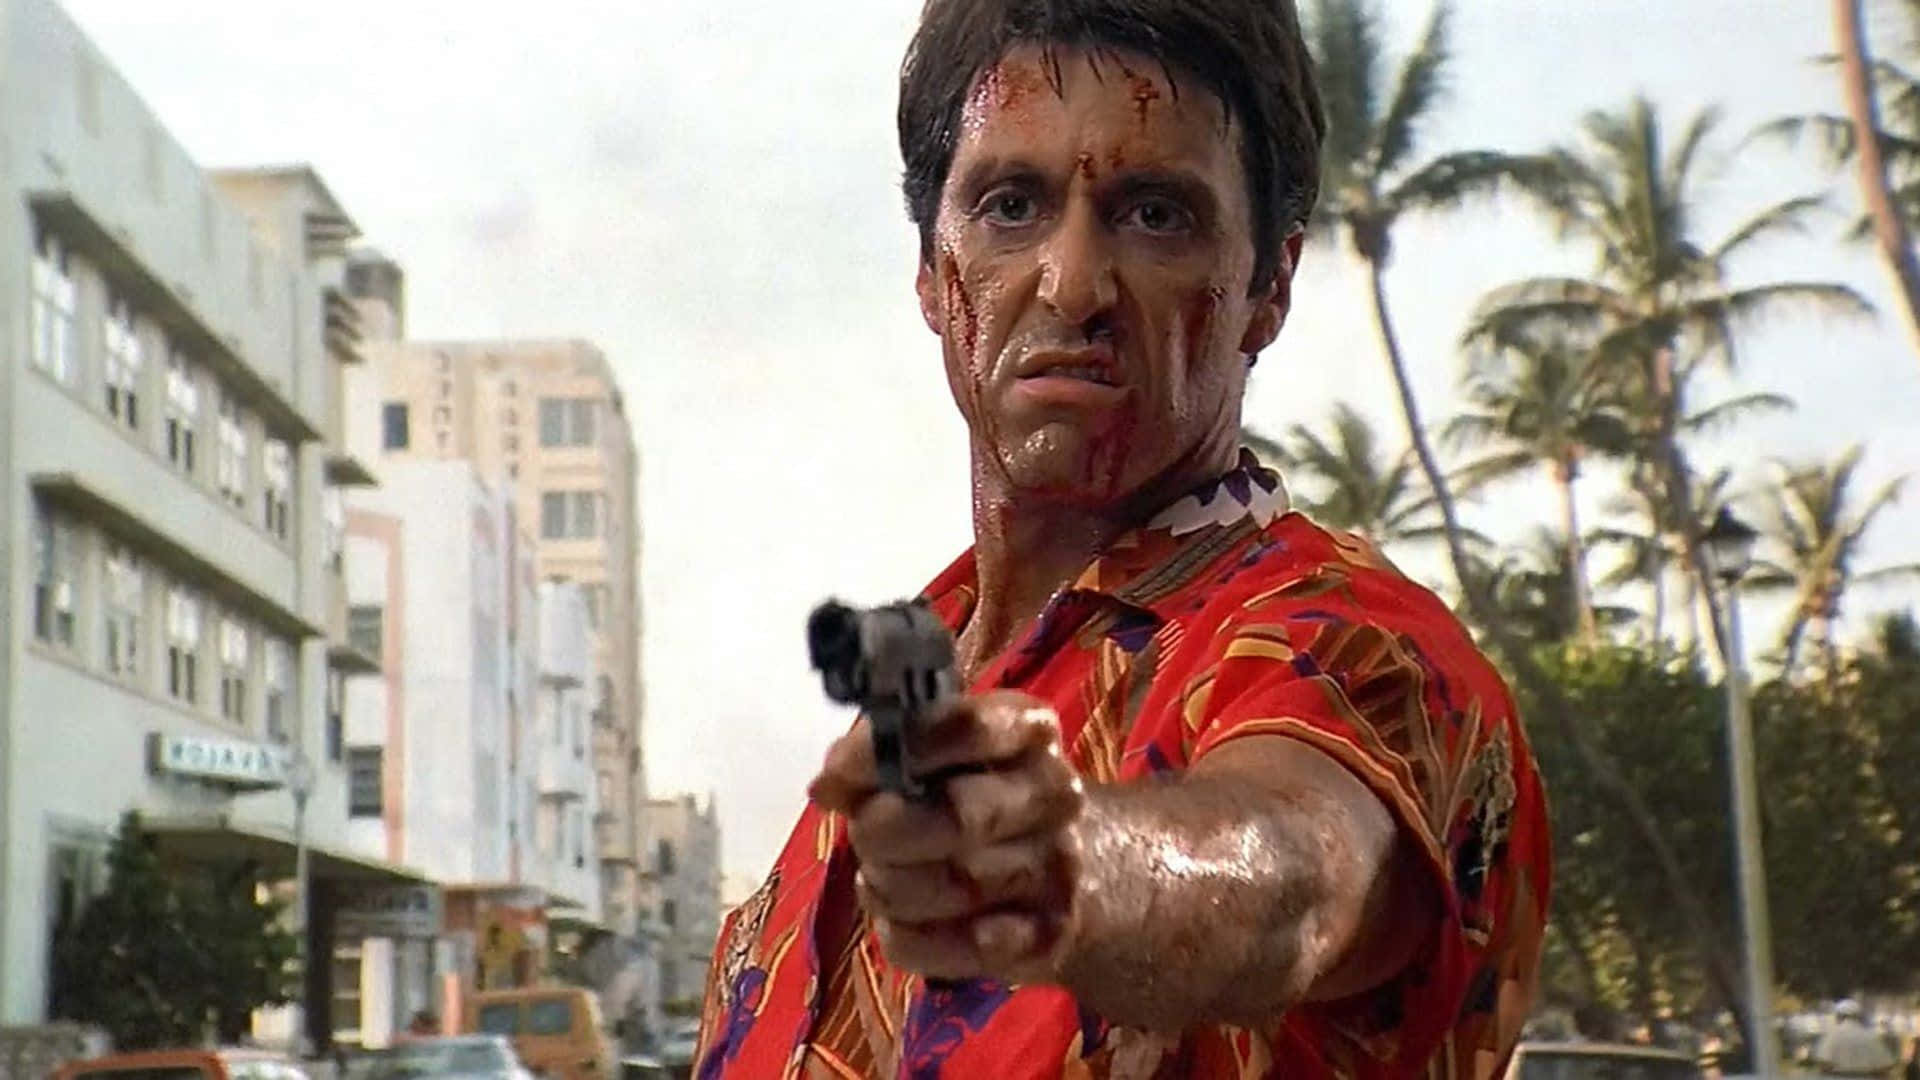 Image  Al Pacino as Scarface